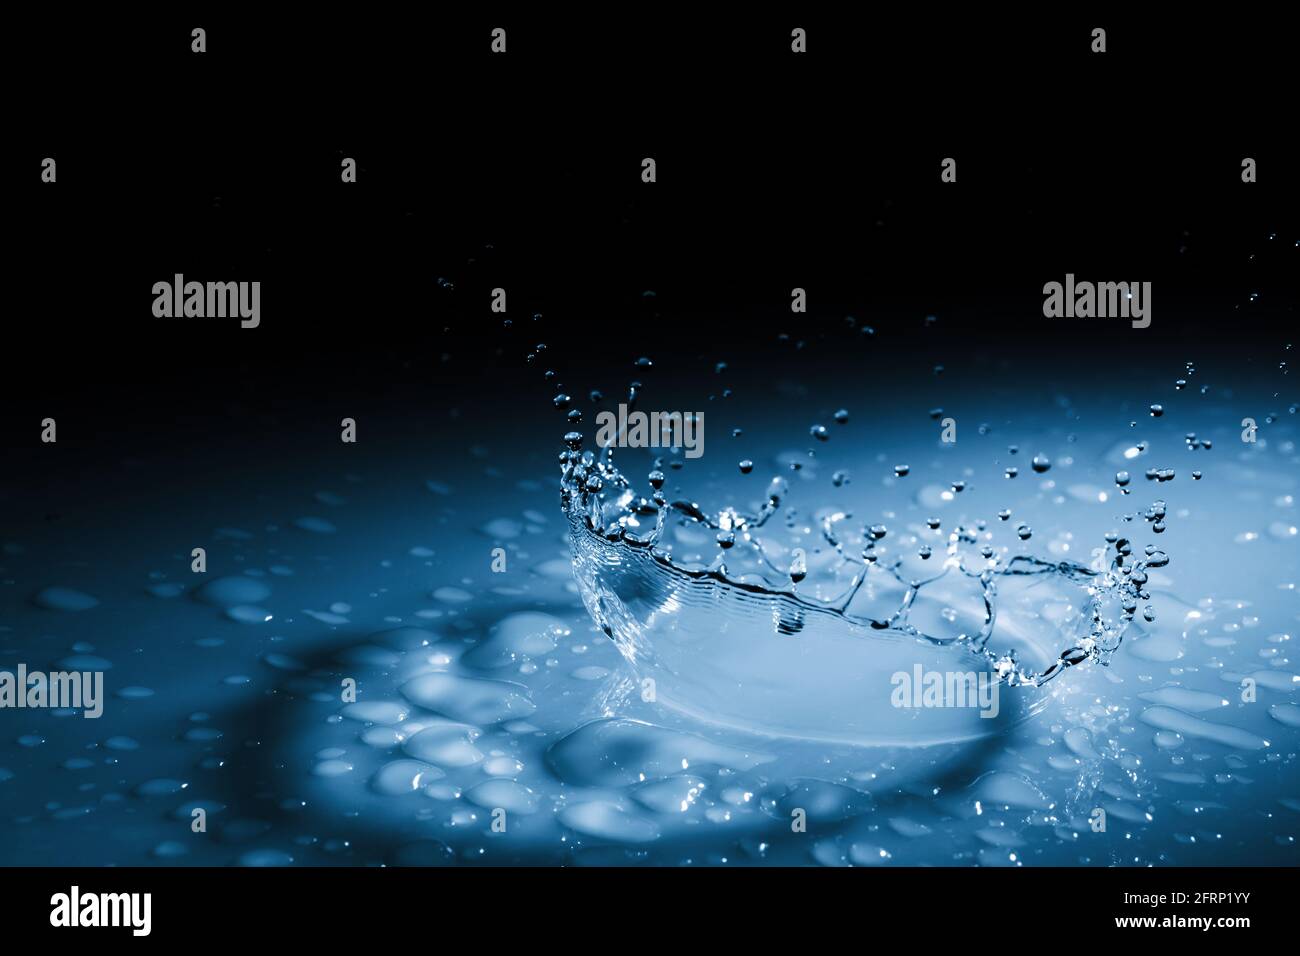 Wunderschöne Spritzkrone aus einem Tropfen Wasser, der auf eine harte Oberfläche fällt. In blauem Licht auf schwarzem Hintergrund Stockfoto